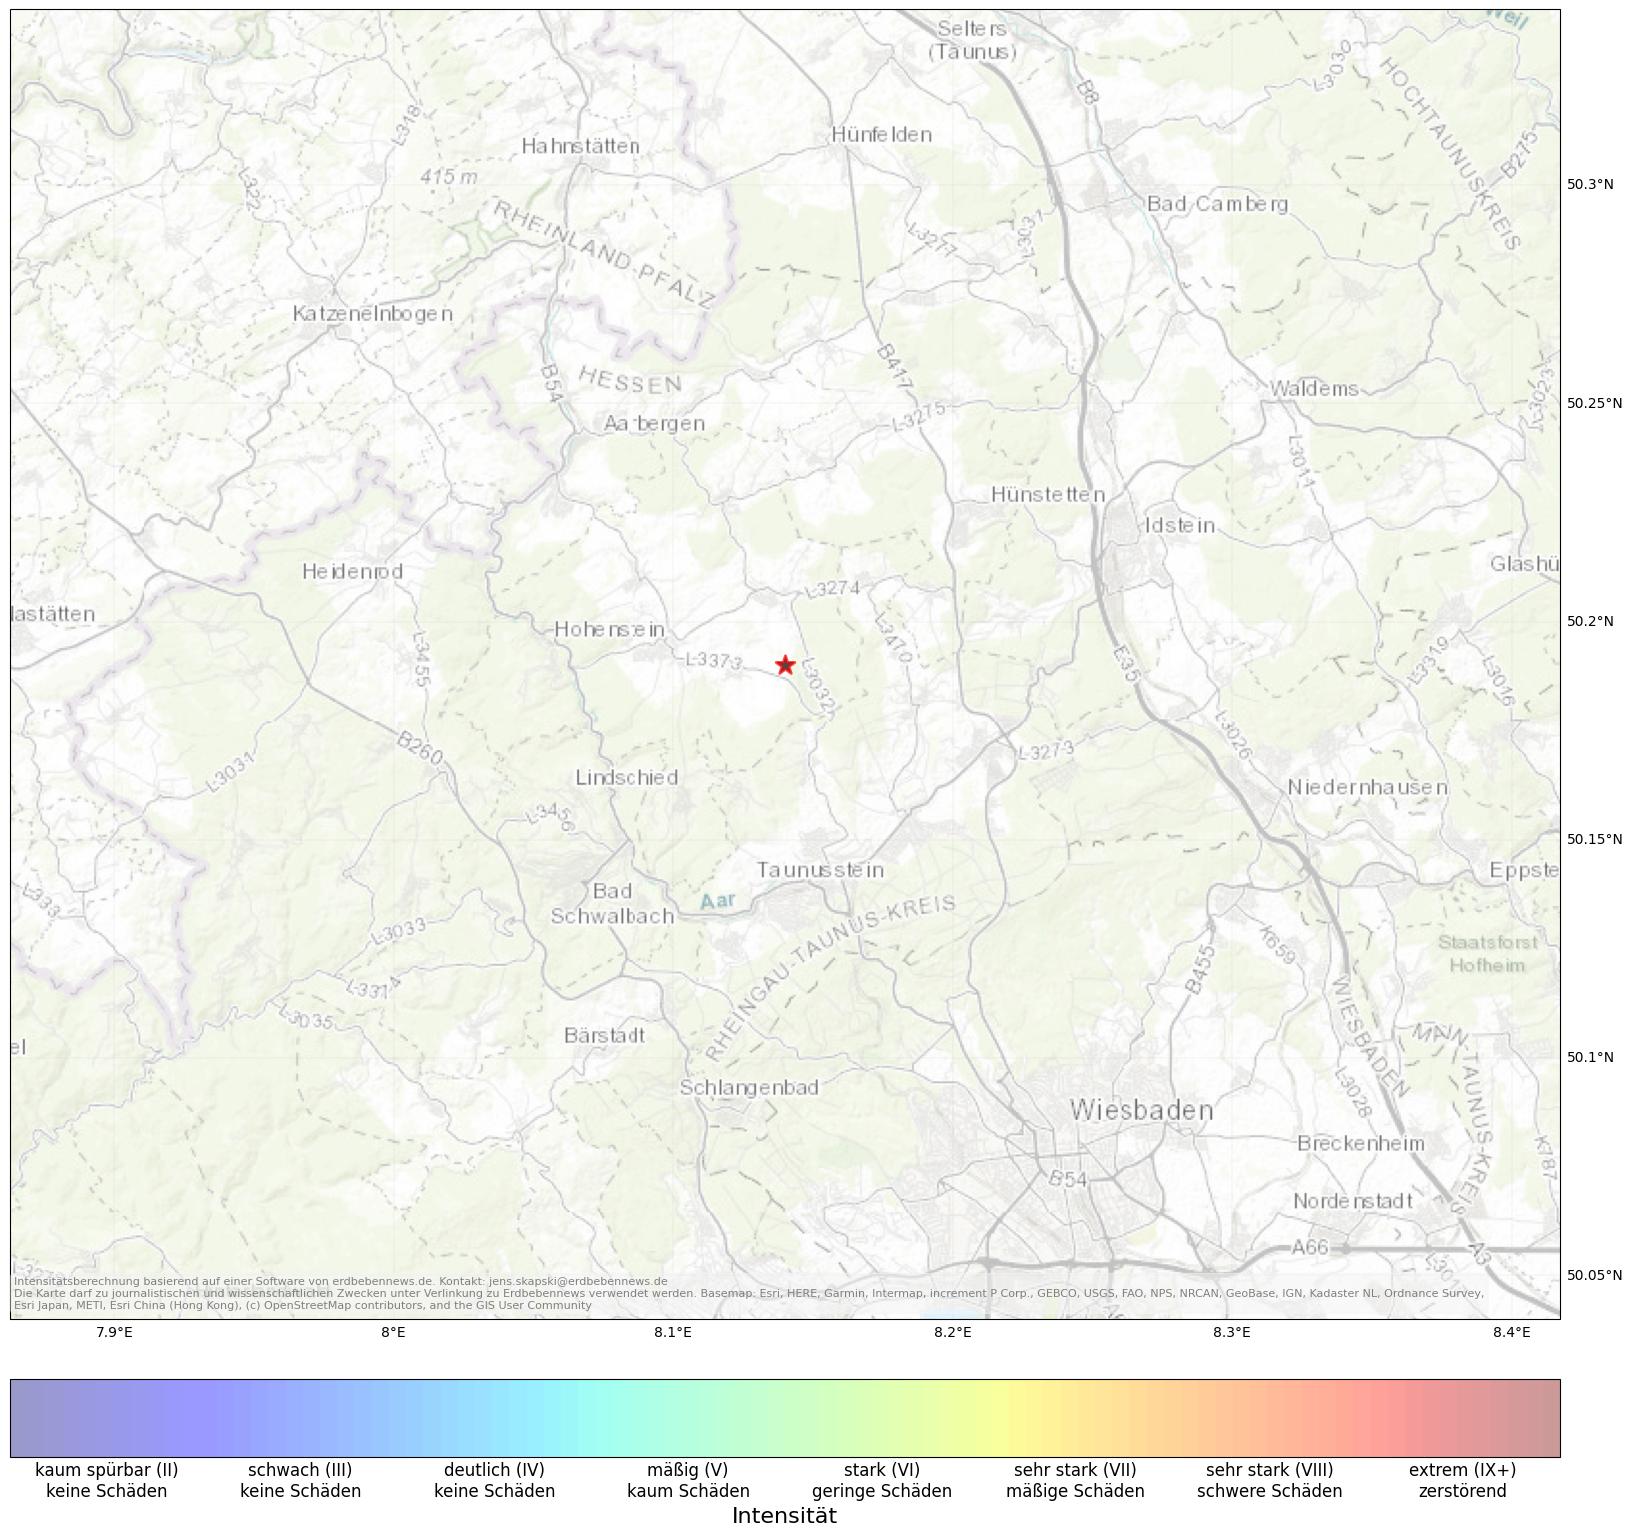 Berechnete Intensität (ShakeMap) des Erdbebens der Stärke 1.6 am 18. May, 23:13 in Deutschland